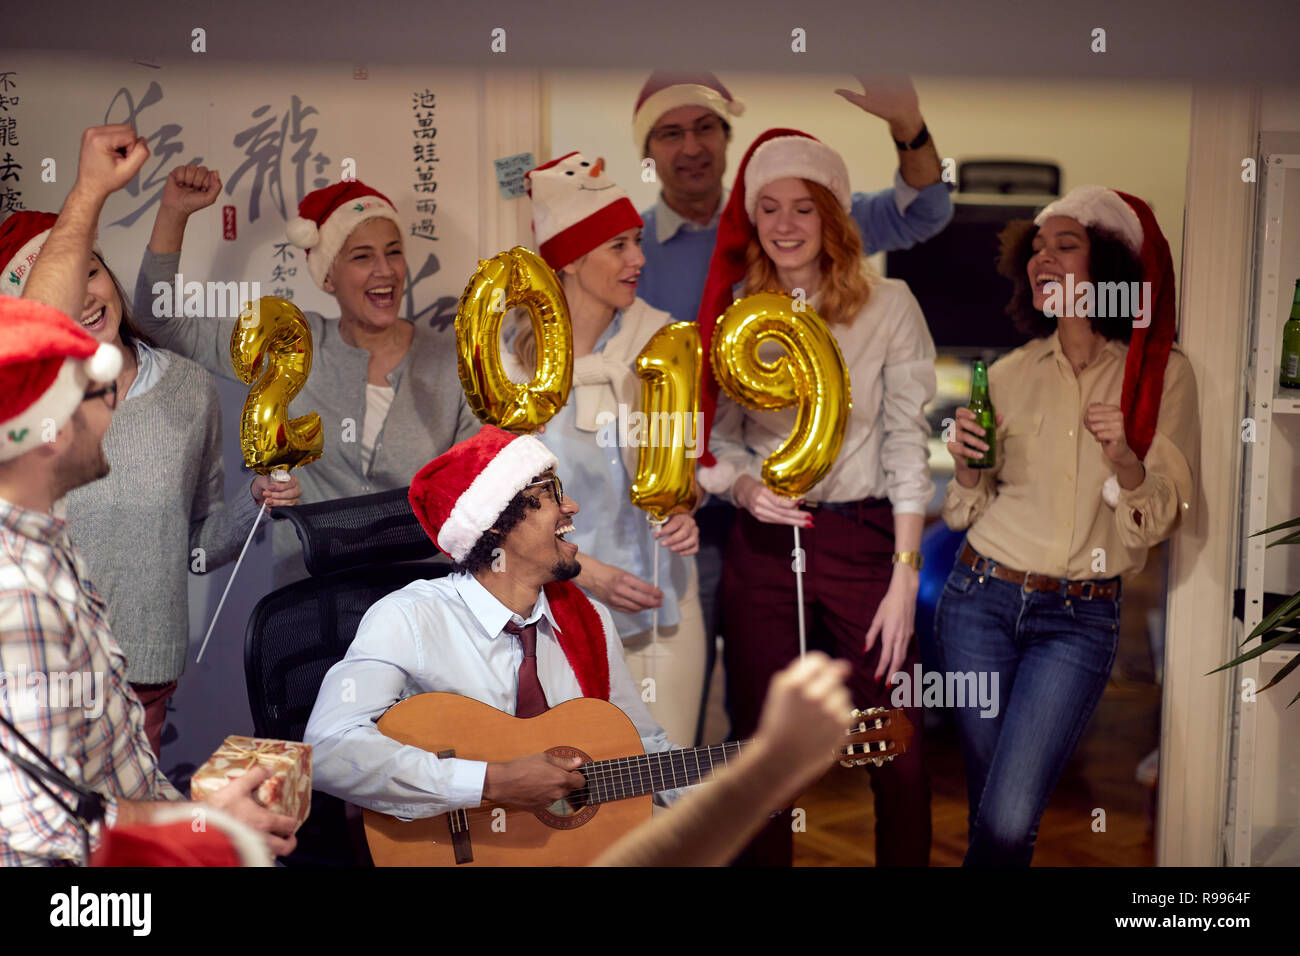 Célébration de Noël s'amusant avec la chanson du groupe d'affaires personnes Banque D'Images